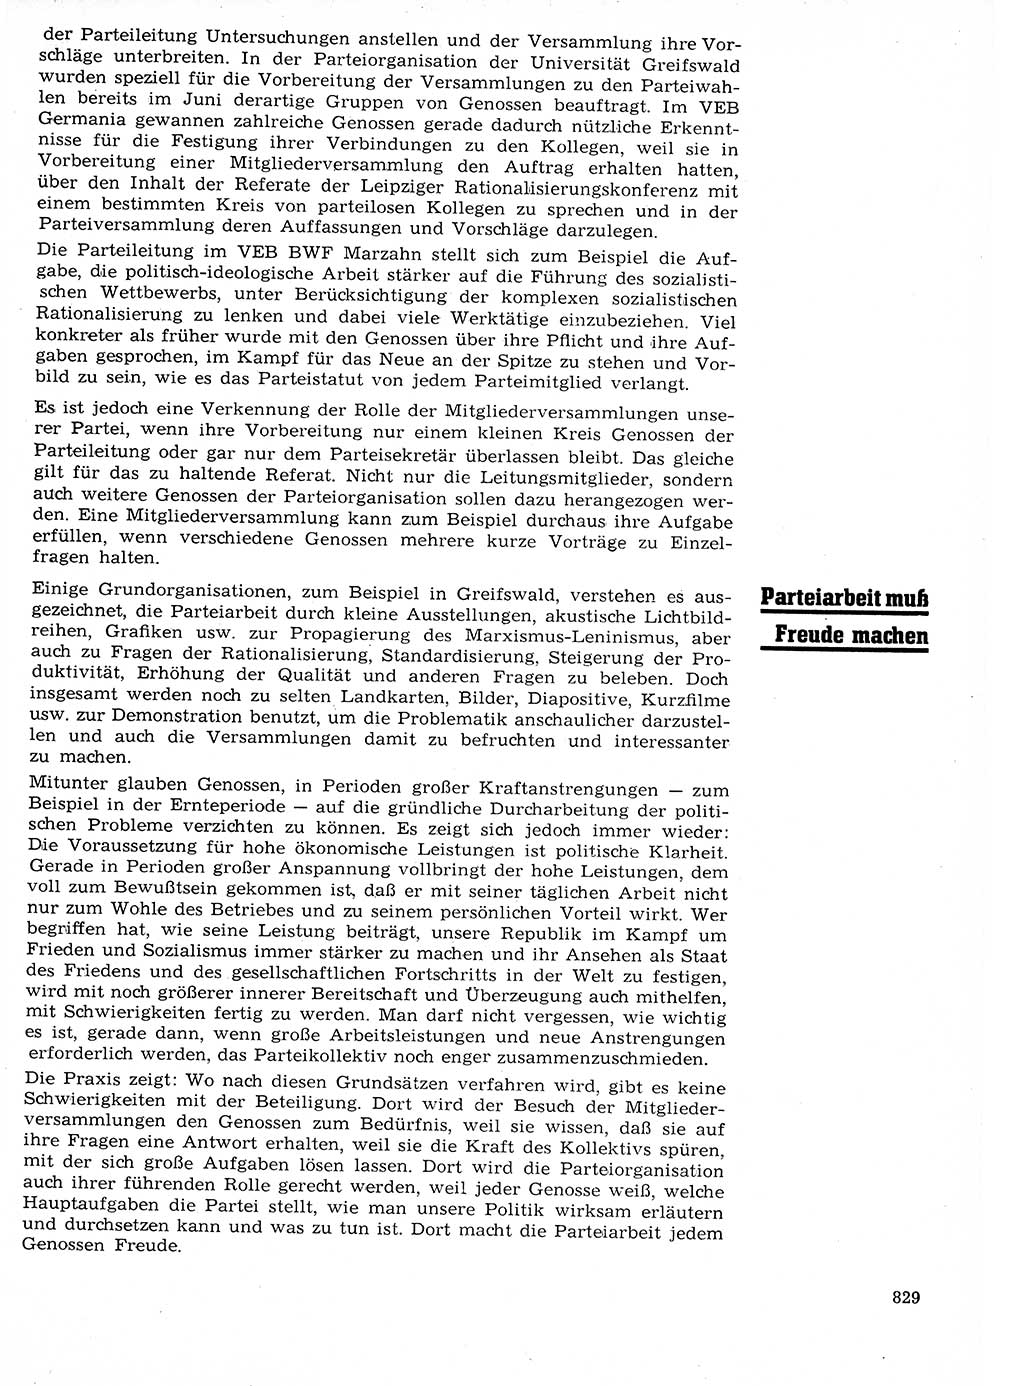 Neuer Weg (NW), Organ des Zentralkomitees (ZK) der SED (Sozialistische Einheitspartei Deutschlands) für Fragen des Parteilebens, 21. Jahrgang [Deutsche Demokratische Republik (DDR)] 1966, Seite 829 (NW ZK SED DDR 1966, S. 829)